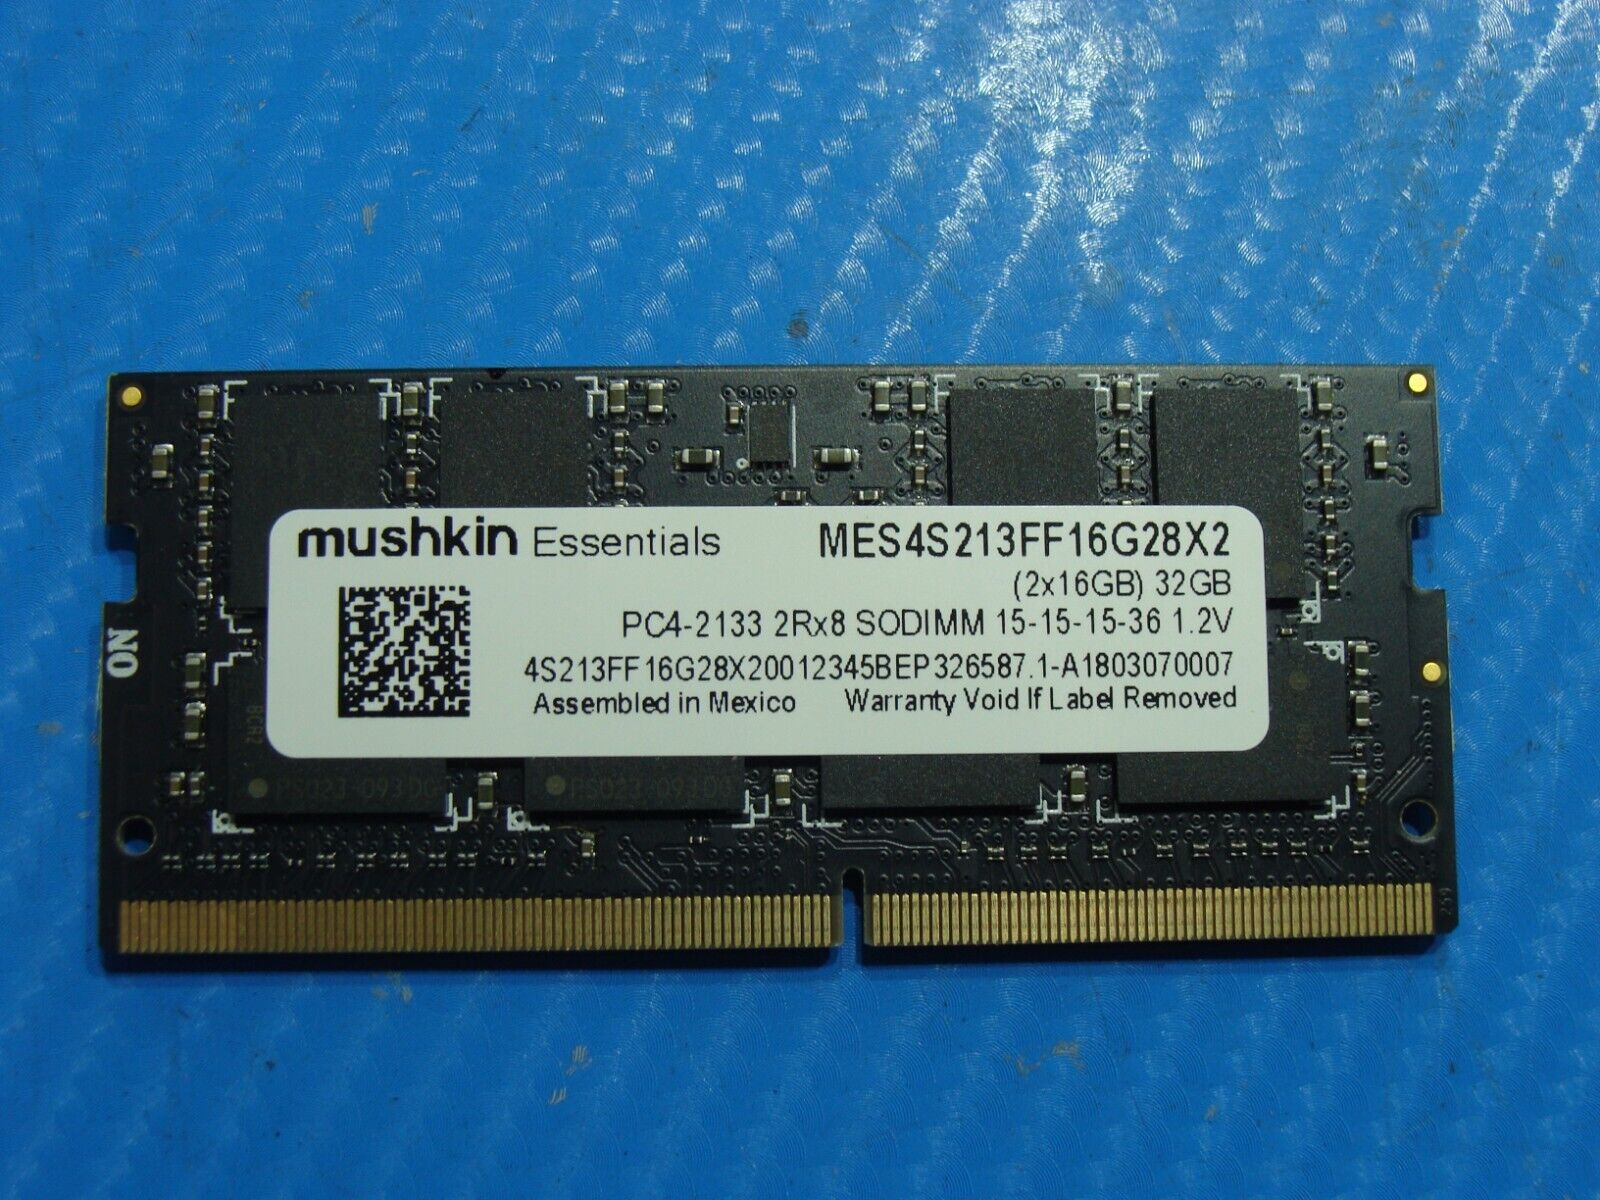 Dell 3567 Mushkin Essentials 32GB 2x16GB PC4-2133 2Rx8 Memory MES4S213FF16G28X2